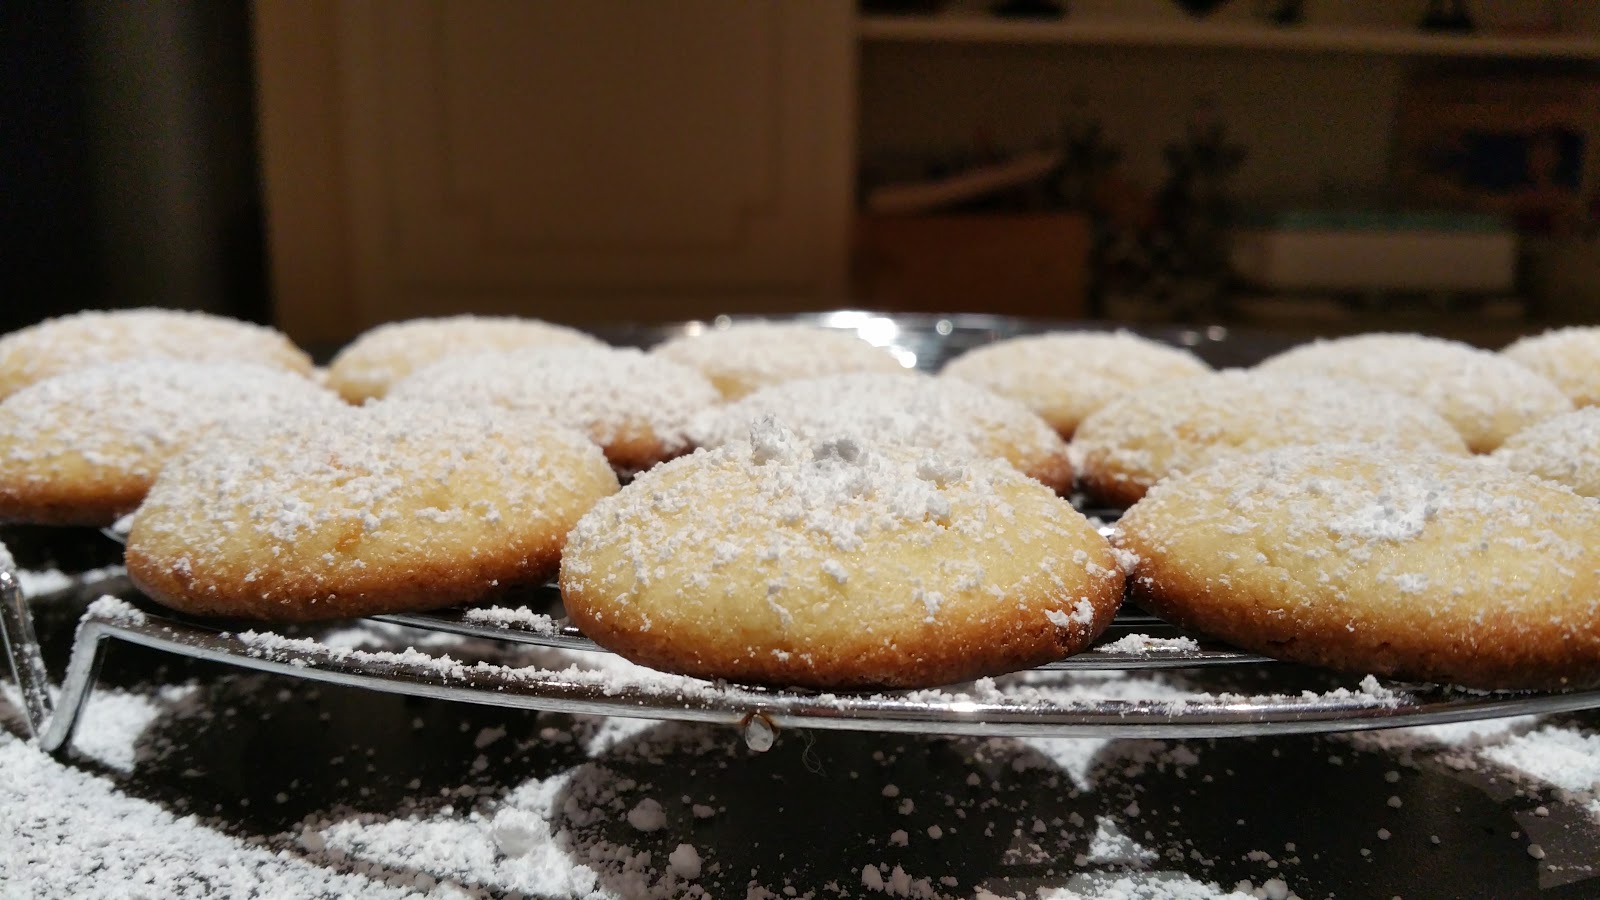 Recette italienne de biscuits à la semoule de maïs au citron, Édulcorant  sans calories et succédané de sucre